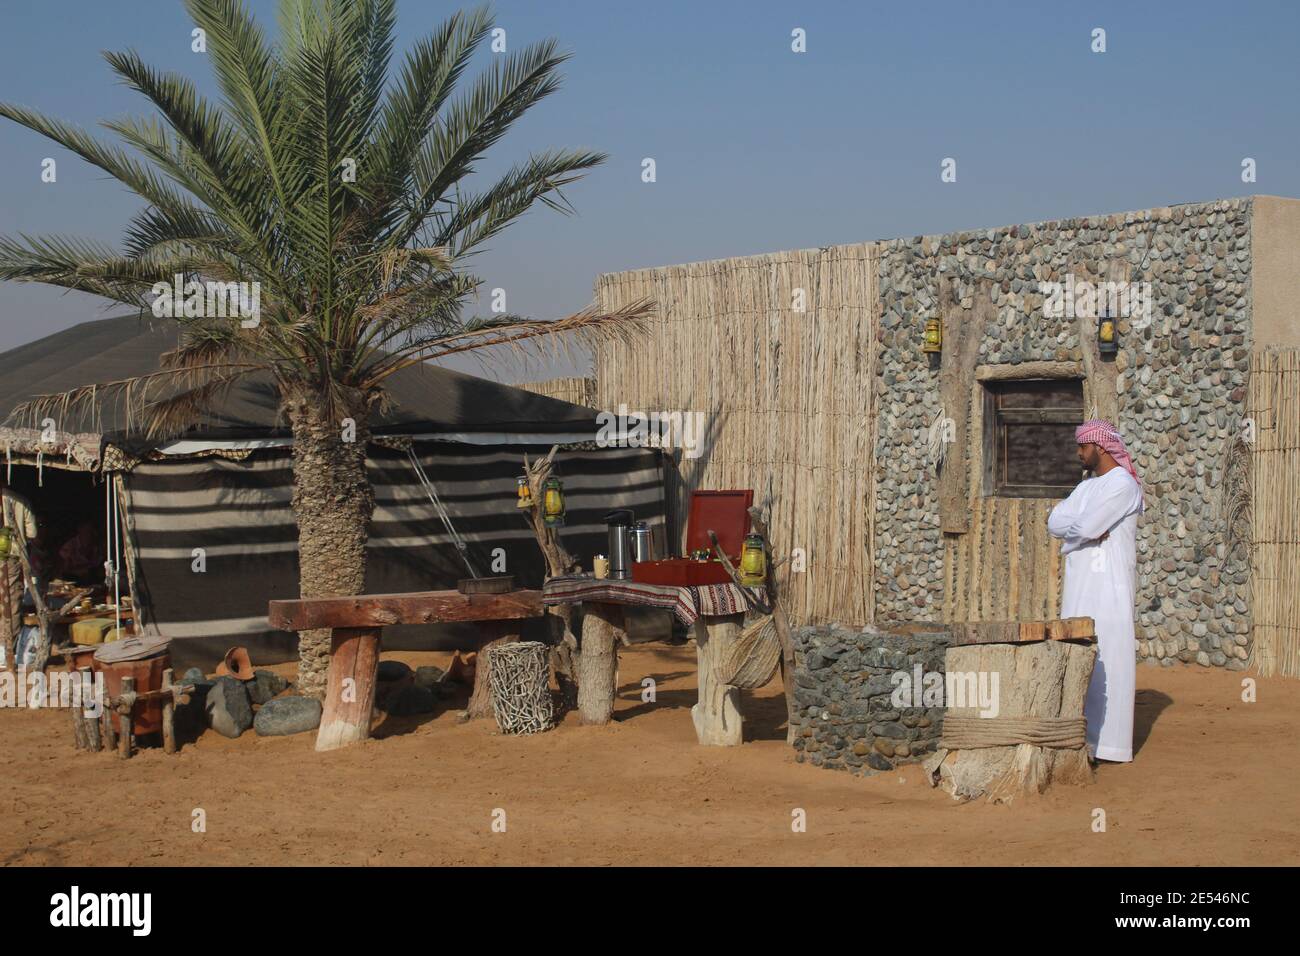 ROTE DÜNEN, VEREINIGTE ARABISCHE EMIRATE - 09. Nov 2019: Beduinenkamp in Dubai Vereinigte Arabische Emirate in der Wüste Stockfoto